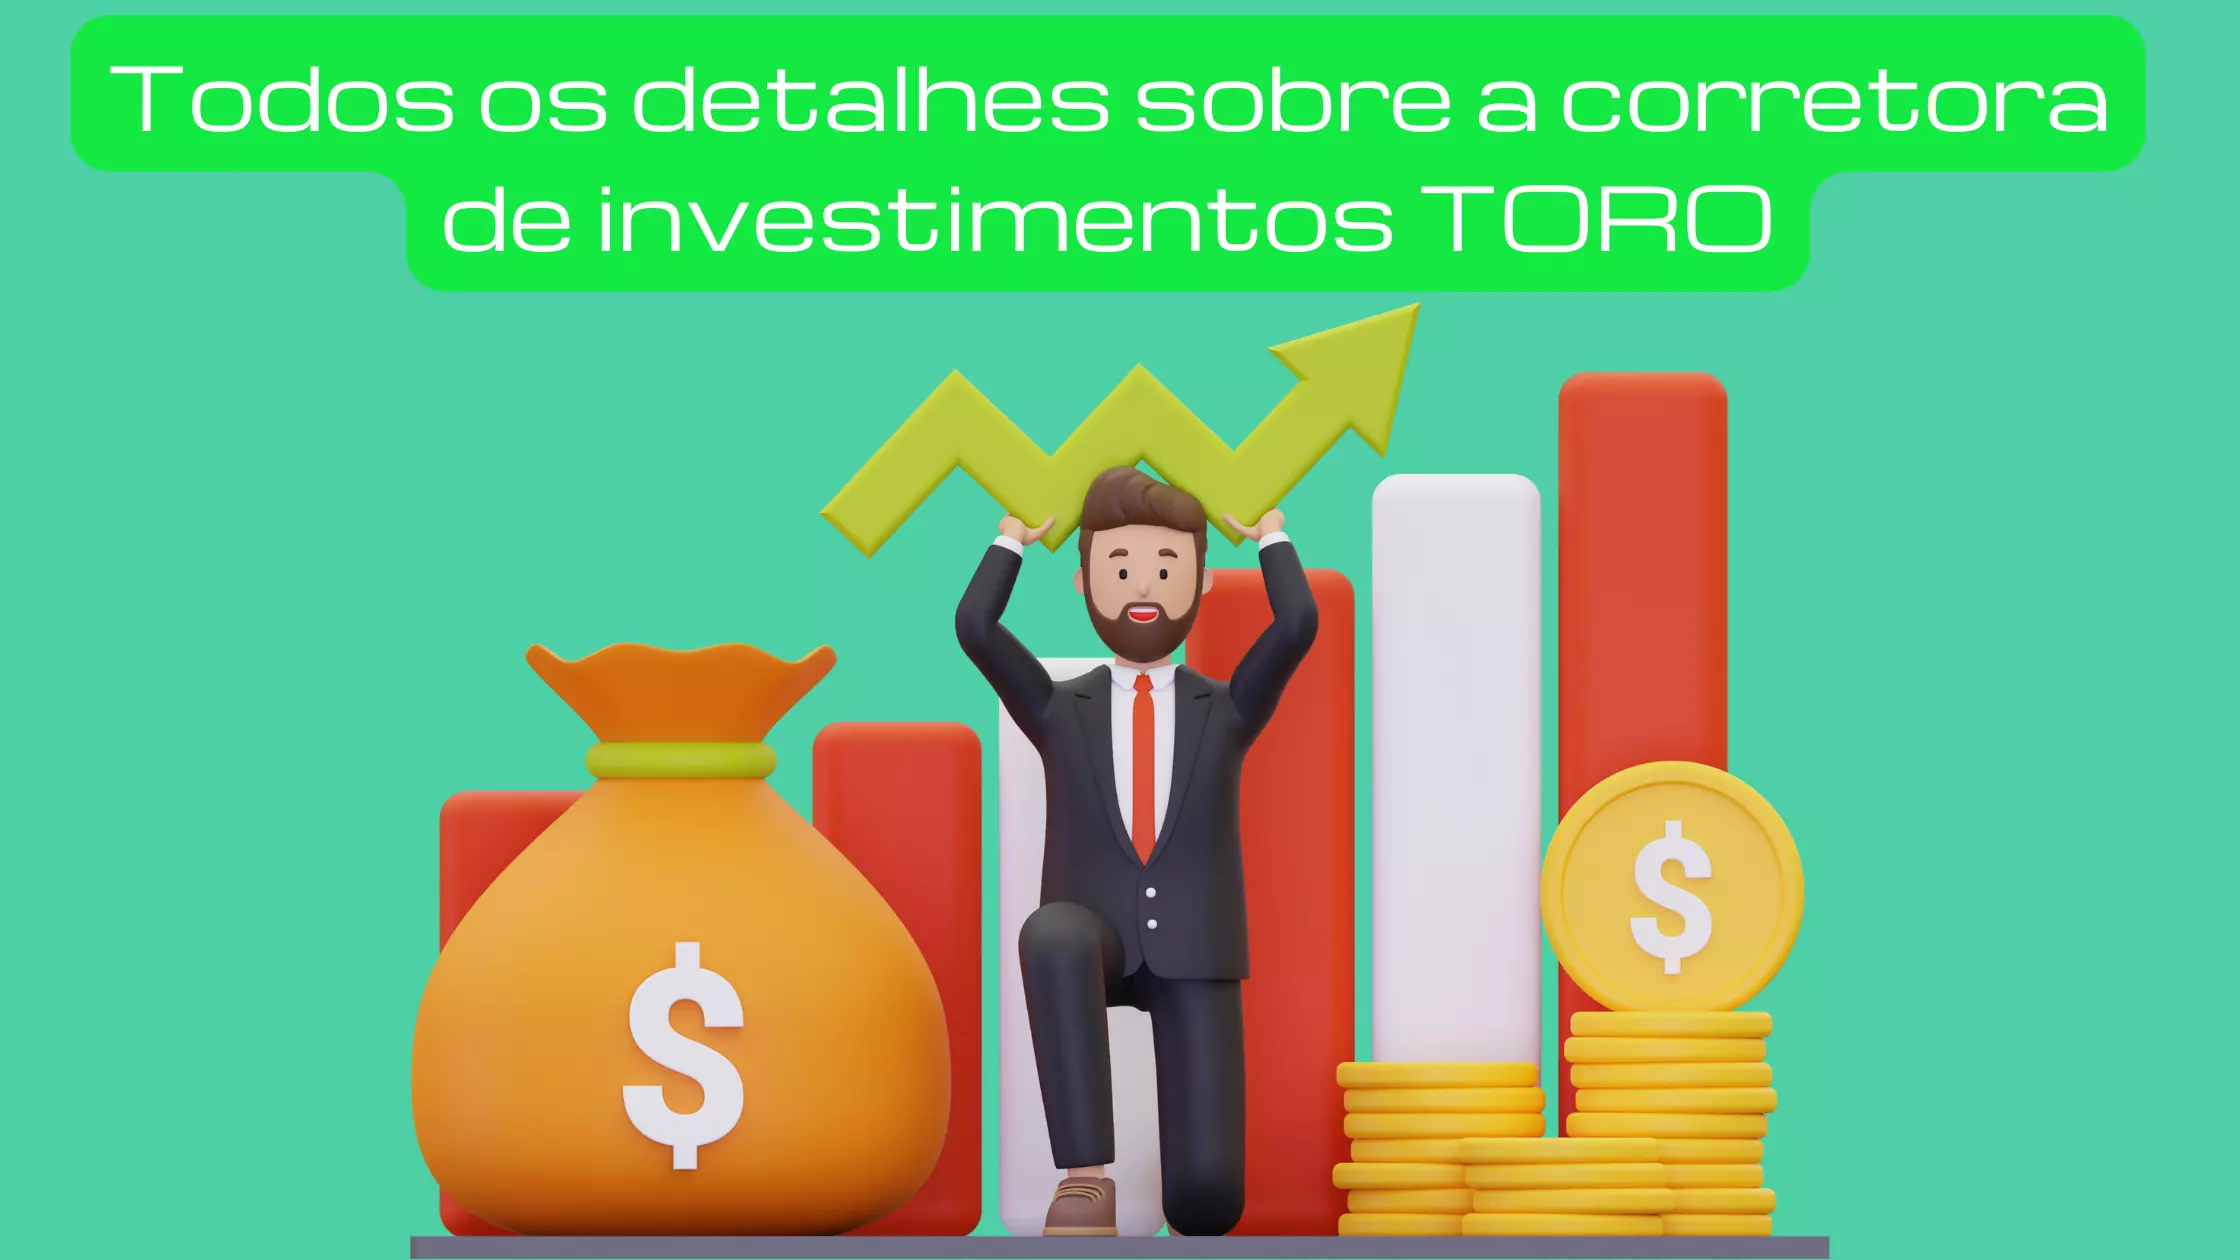 CORRETORA DE INVESTIMENTOS TORO